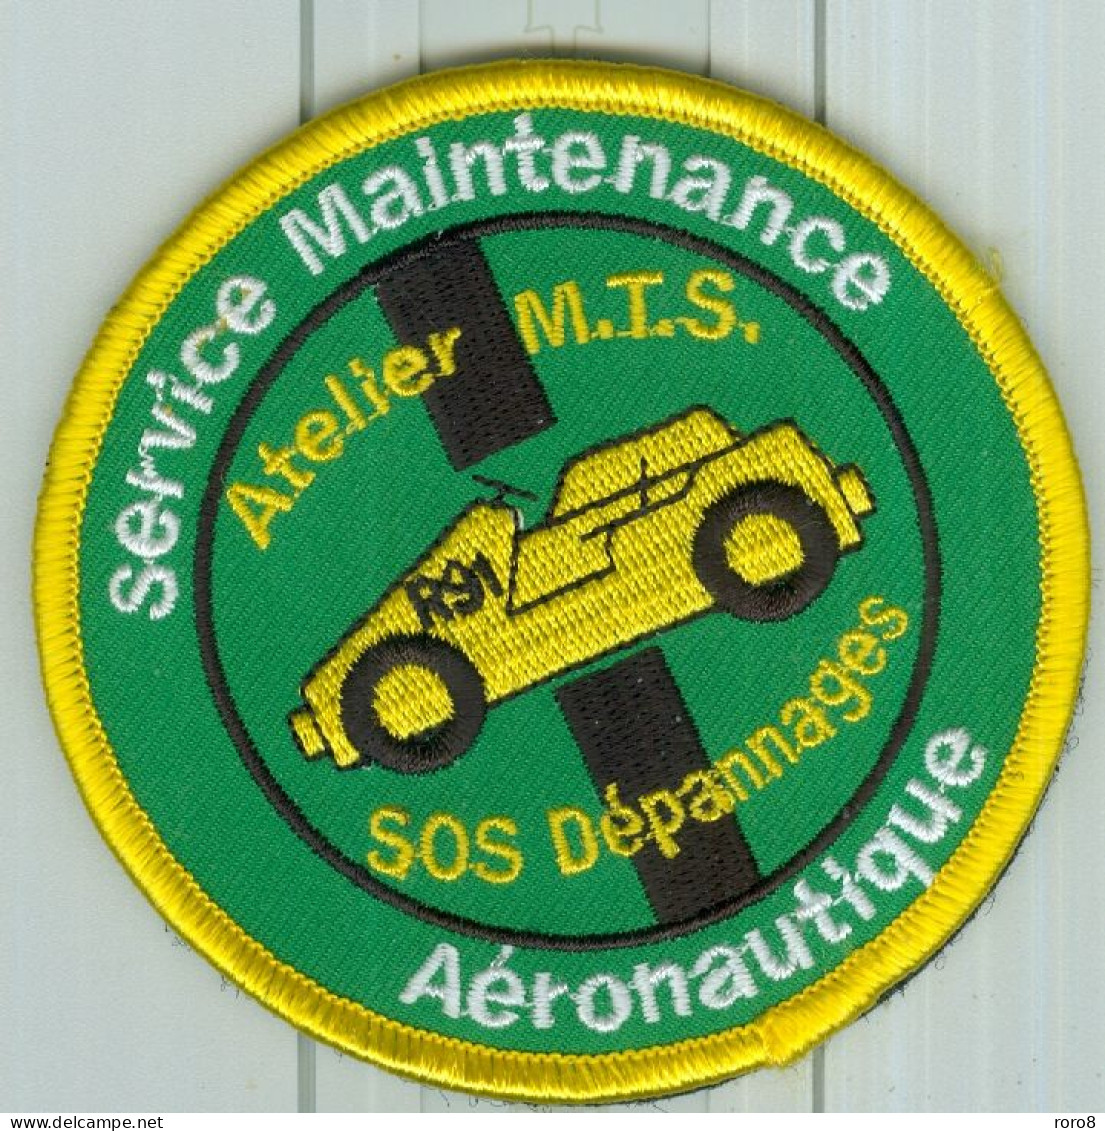 PATCH - MARINE NATIONALE - Service Maintenance Aéronautique R91 Atelier M.T.S.SOS Dépannages  R91. - Patches